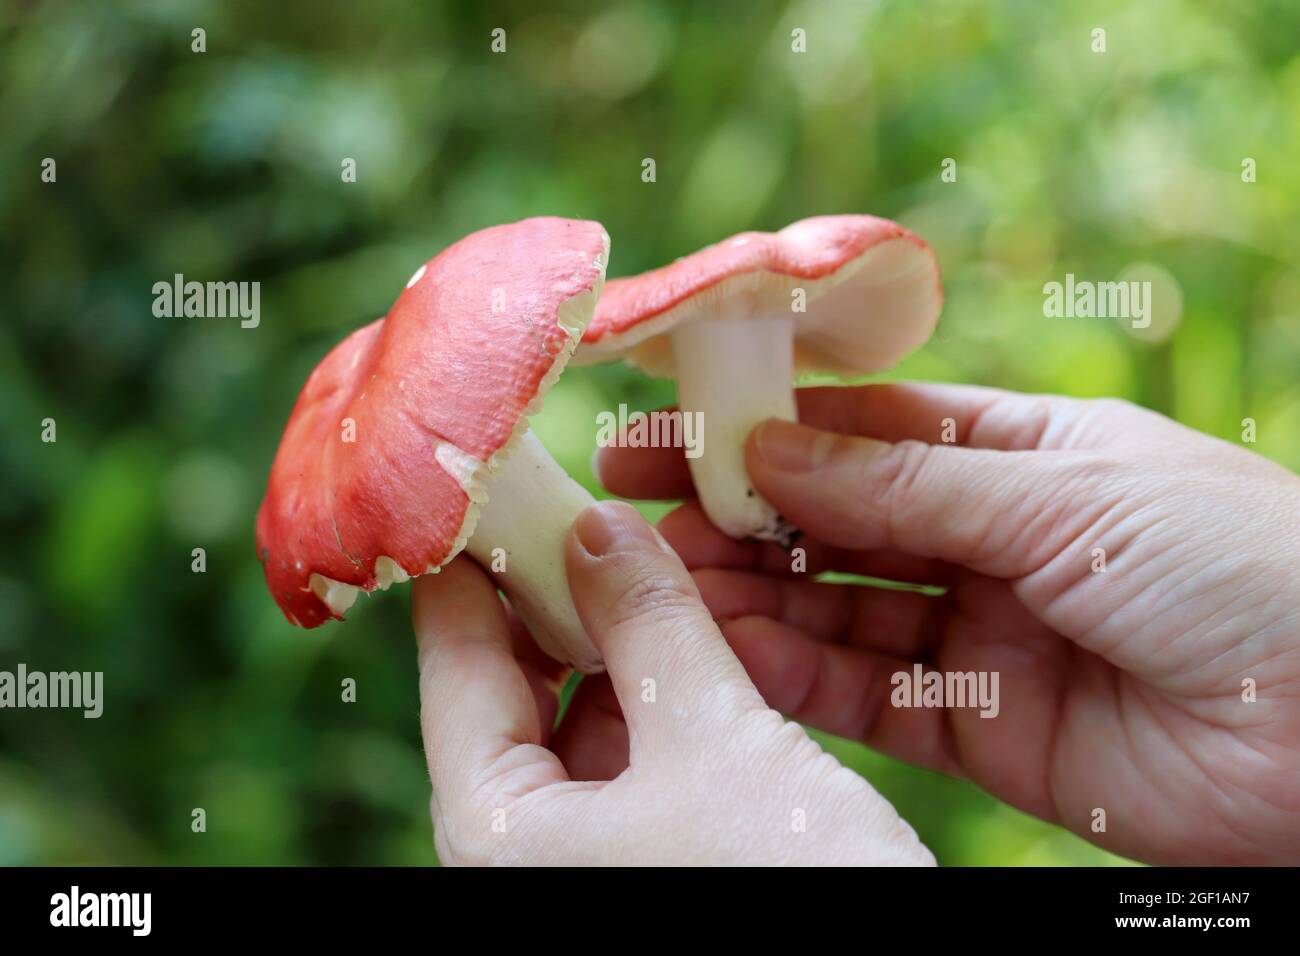 Raccolta di funghi commestibili in una foresta. Funghi russula con cappuccio rosso e gamba bianca in mani femminili Foto Stock